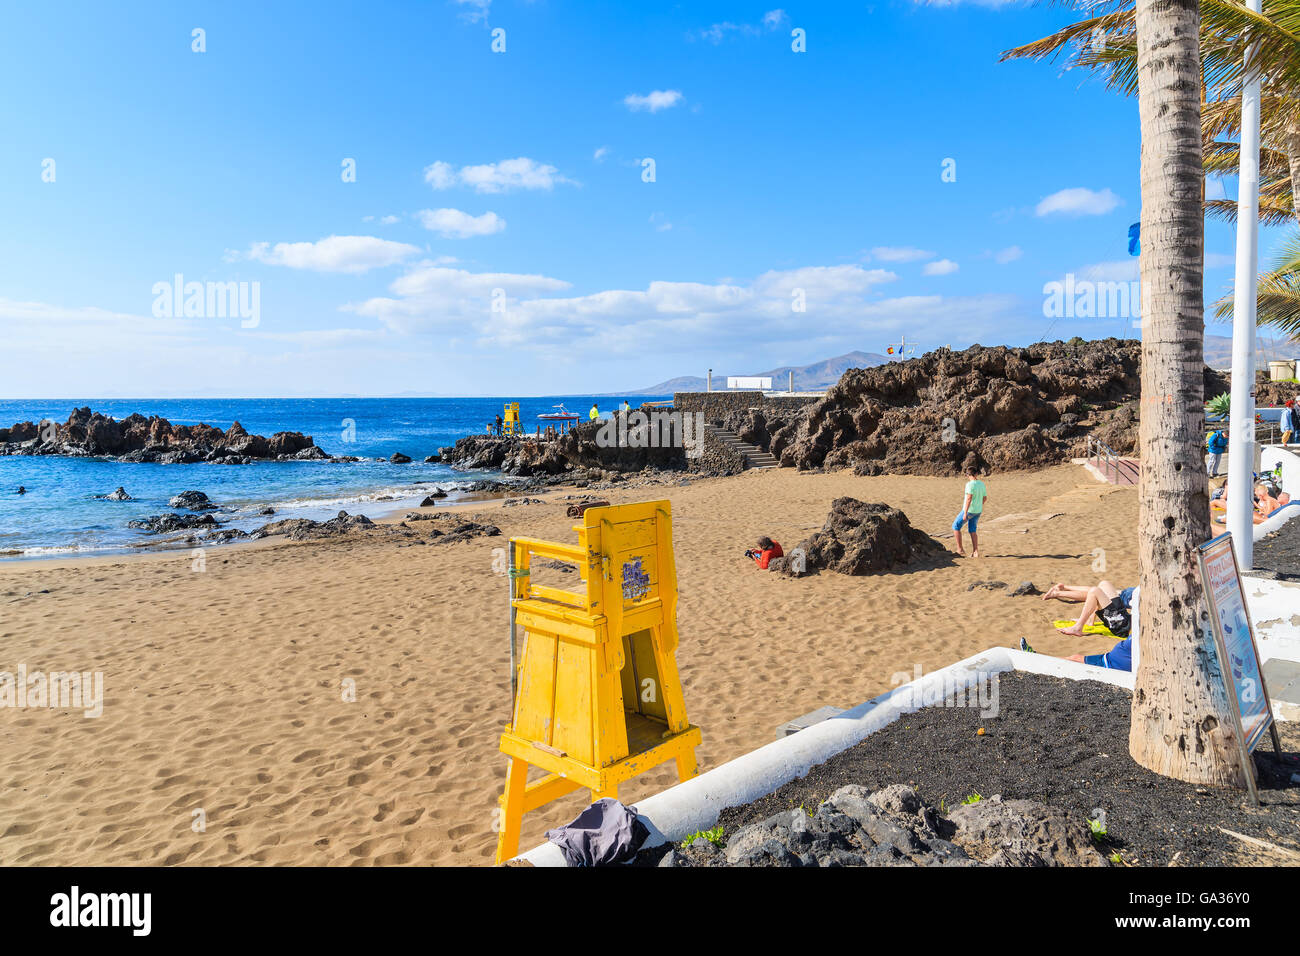 PUERTO DEL CARMEN, LANZAROTE ISLAND - Jan 17, 2015 : Jaune lifeguard tower on tropical beach à Puerto del Carmen maison de ville. Canaries sont destination populaire de vacances toute l'année. Banque D'Images